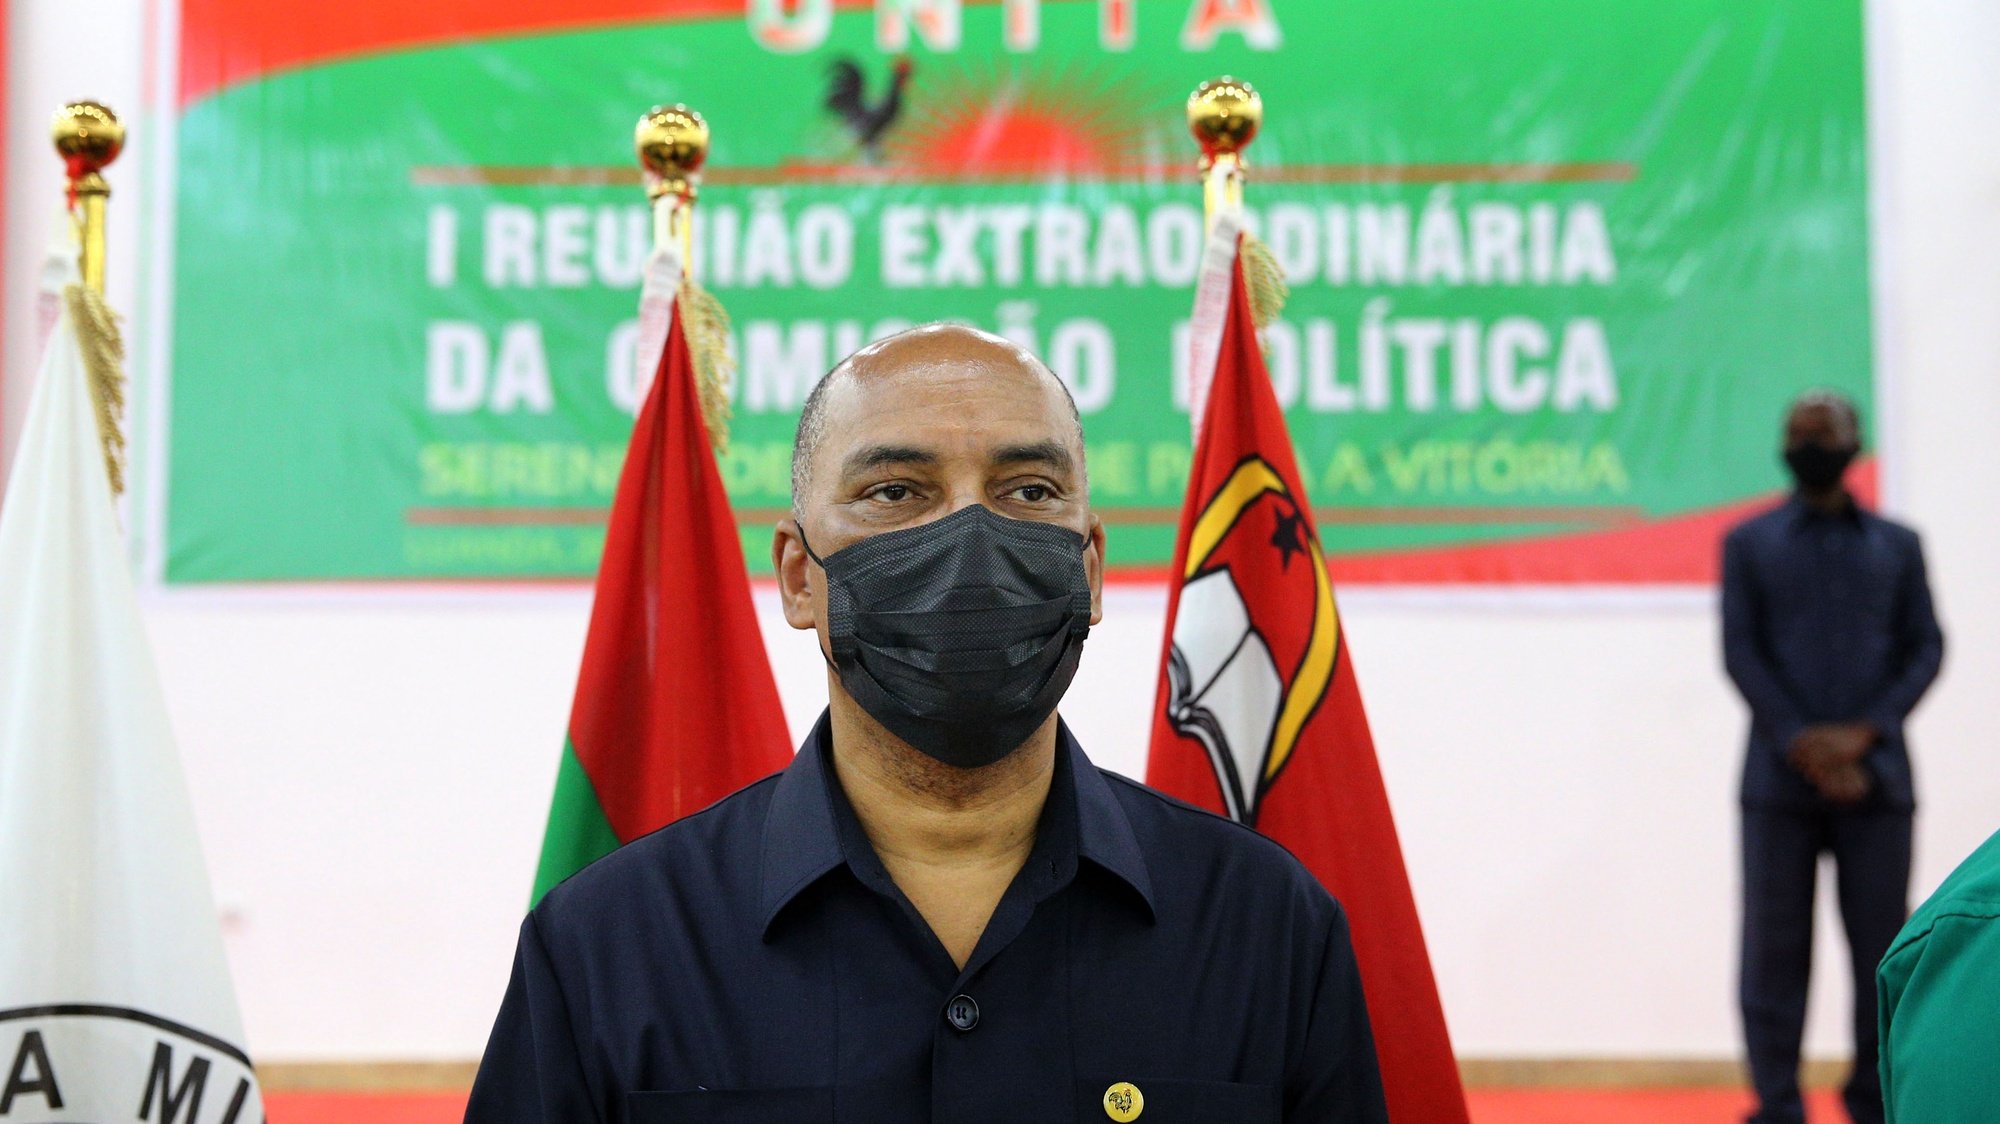 Adalberto Costa Júnior formalizou candidatura à liderança da UNITA